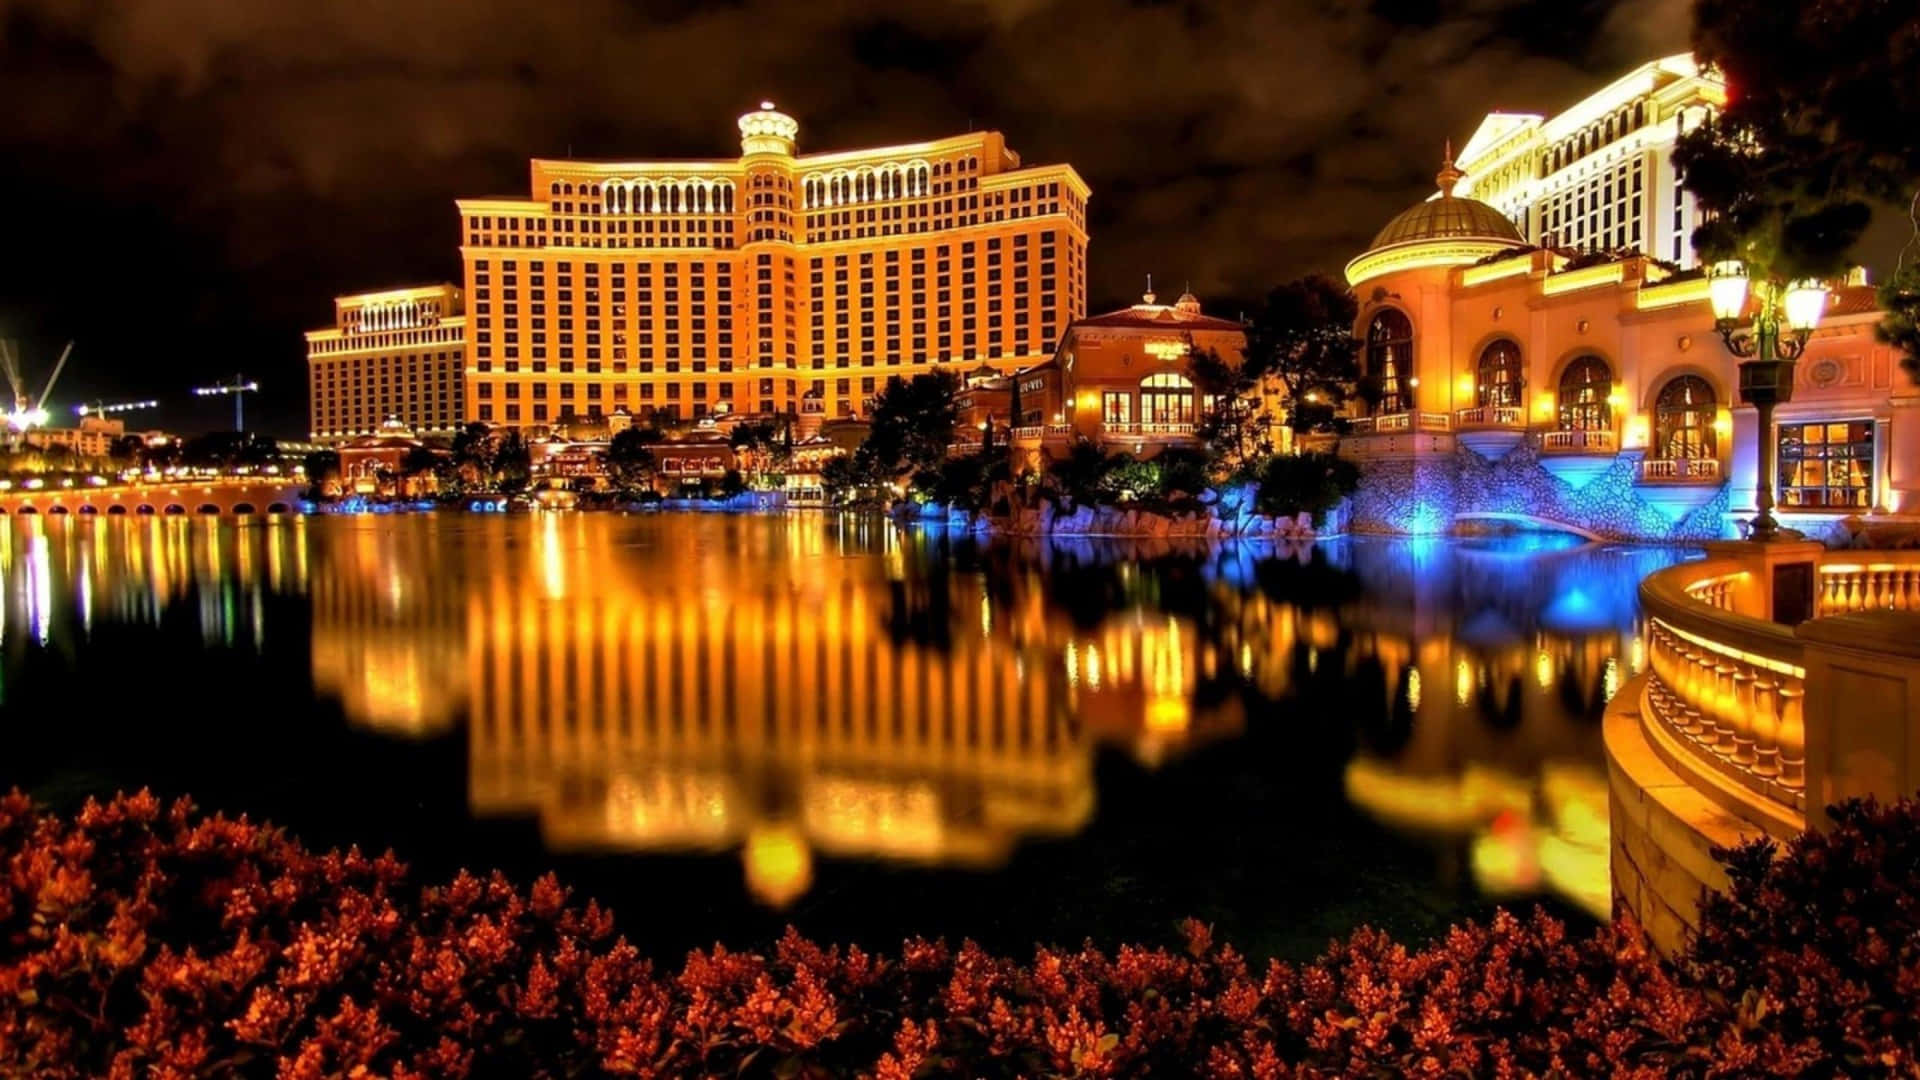 Gulaljus Bakgrundsbild Från Bellagio Hotel Och Casino I Las Vegas.